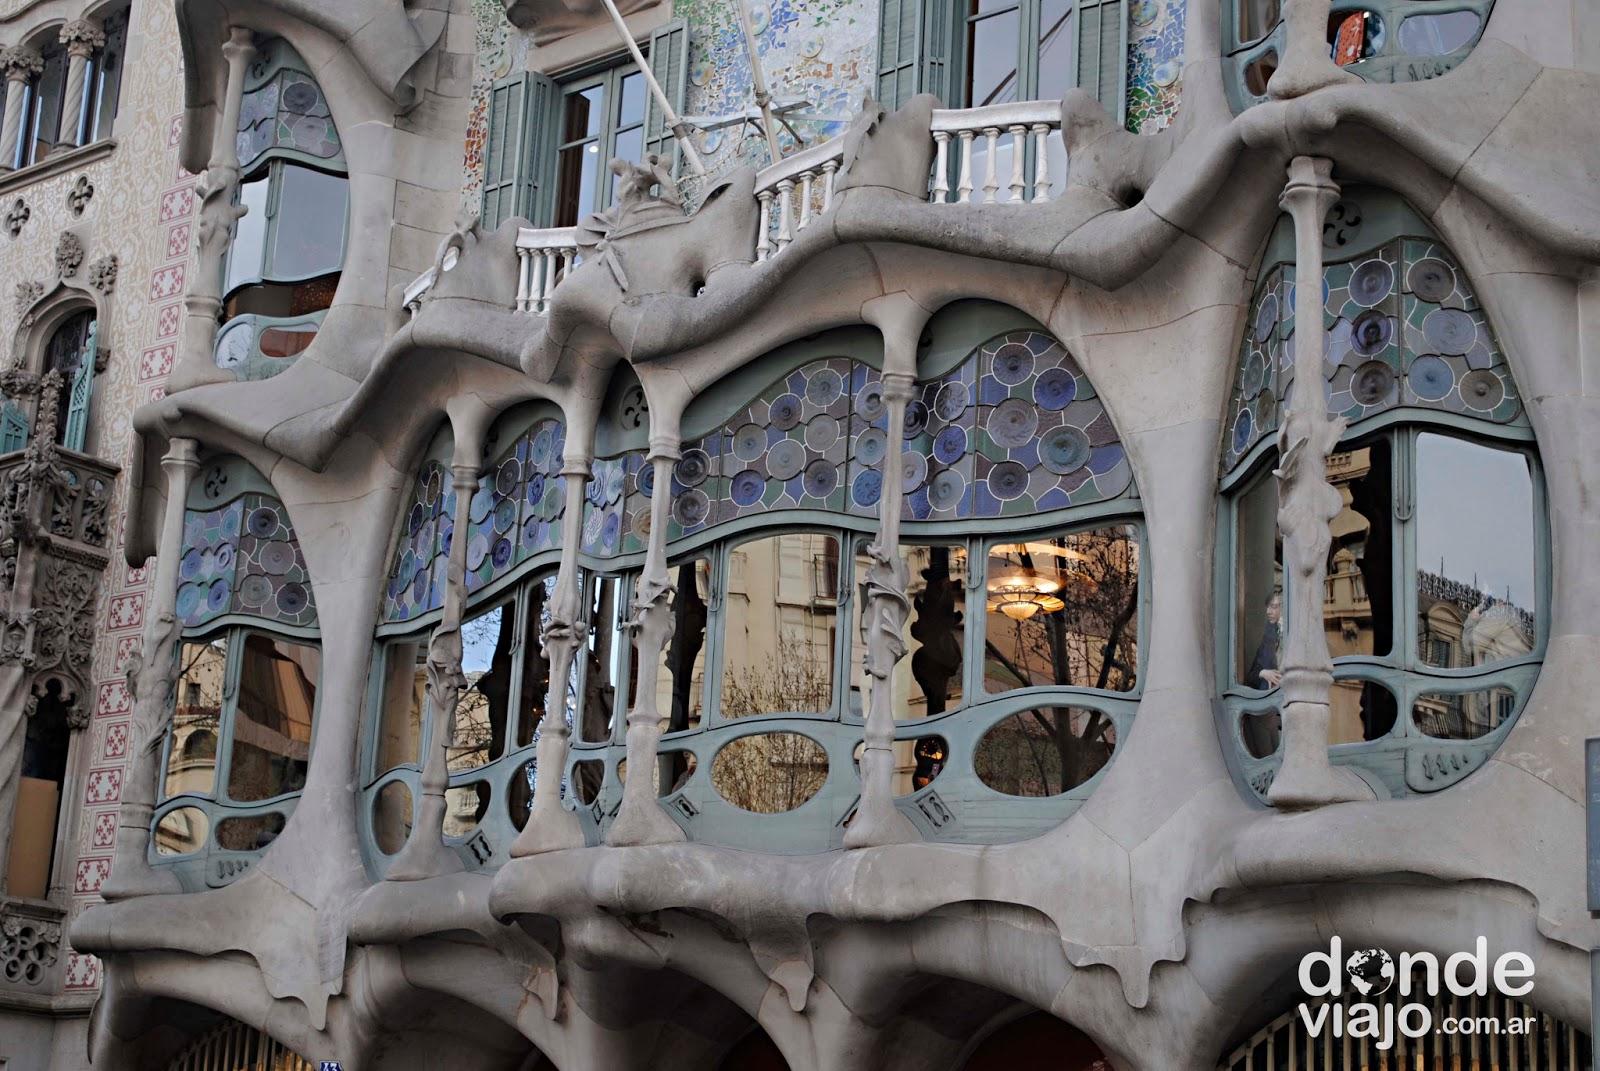 Casa Batló (Antoni Gaudí)